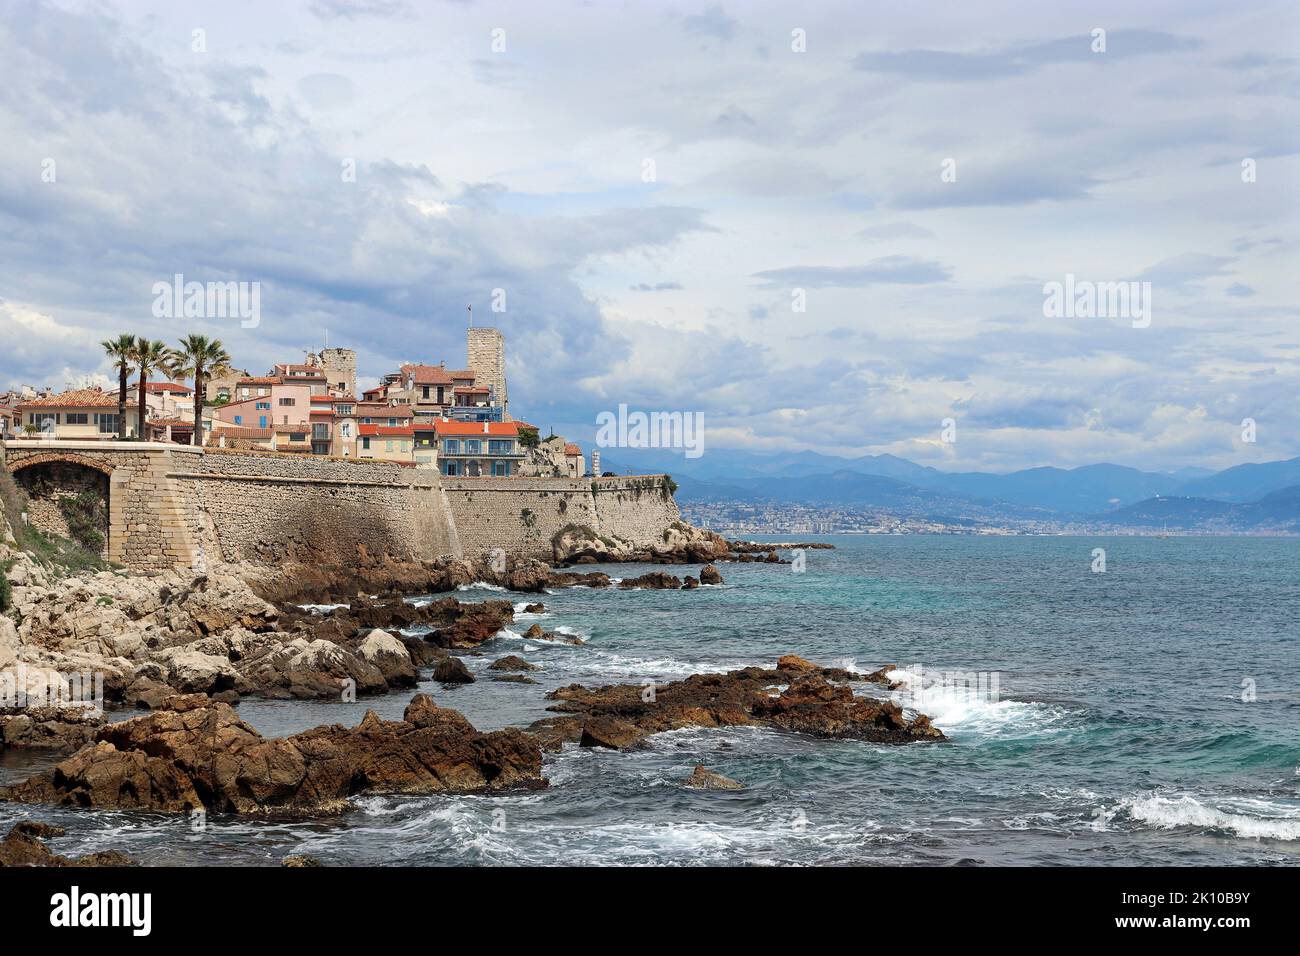 Una vista in lontananza della città costiera di Antibes, mostrando la città vecchia racchiusa da bastioni del 16th ° secolo che si innalzano sopra il mare. Costa Azzurra. Foto Stock